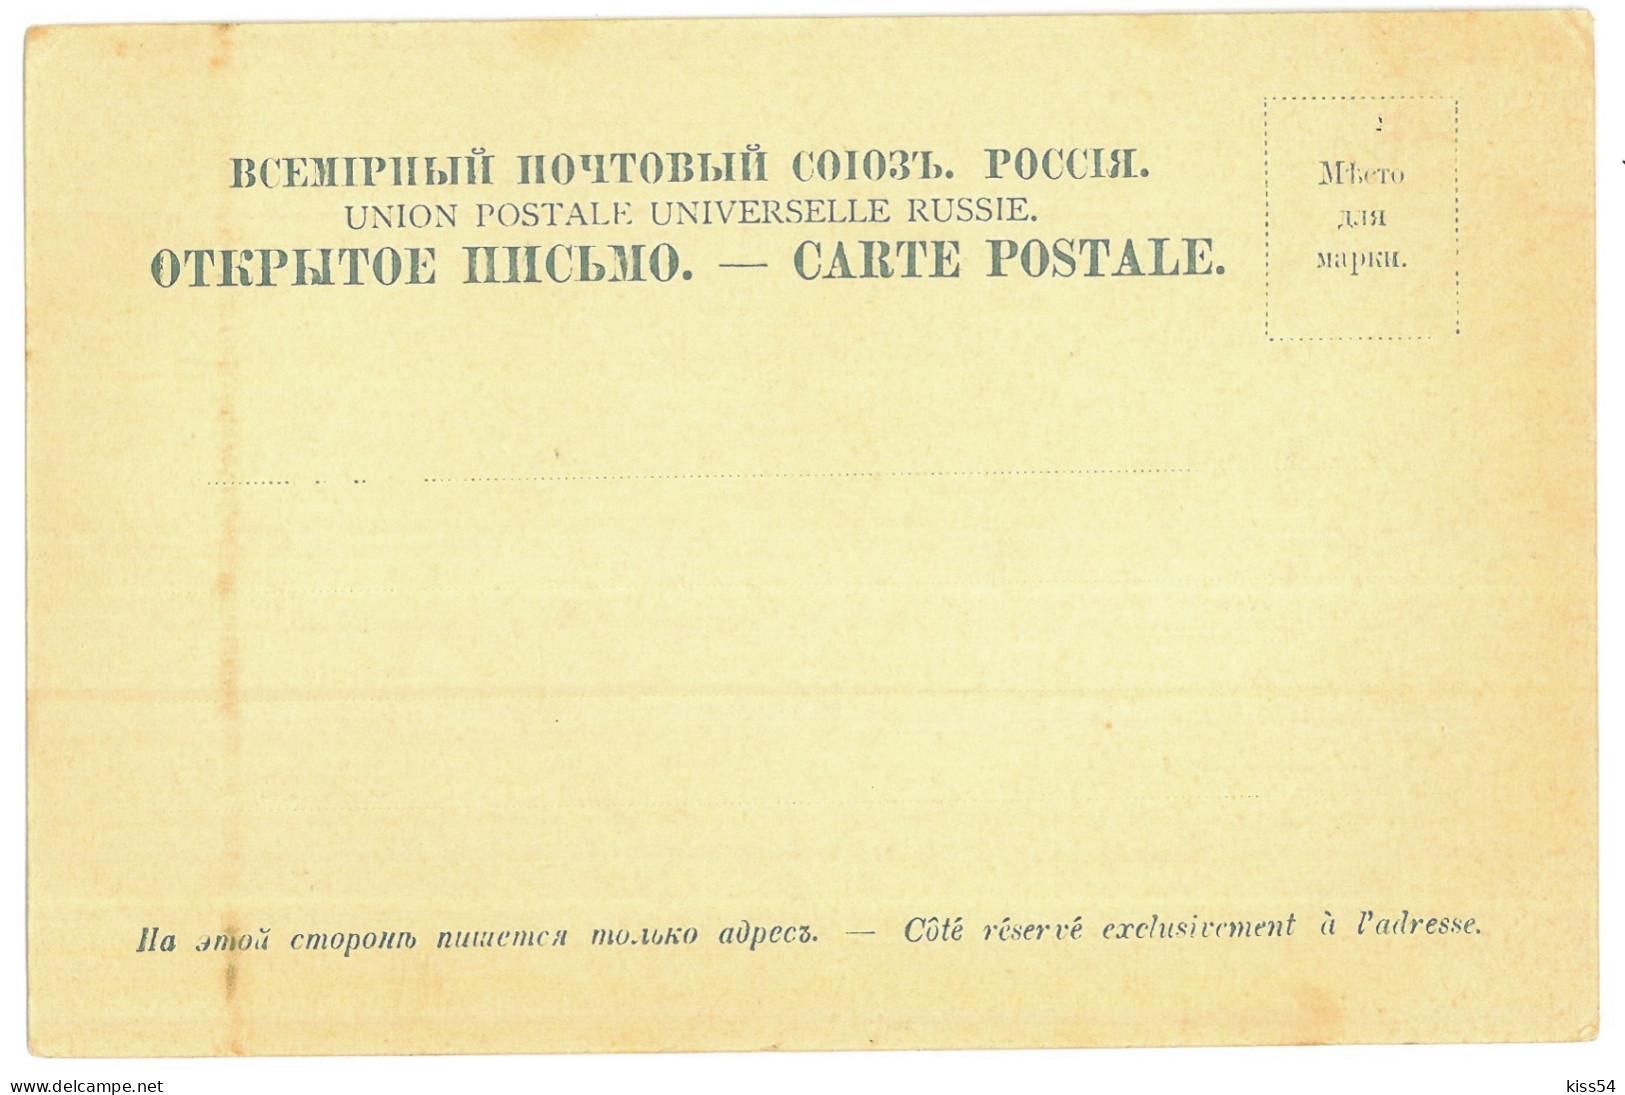 UK 63 - 24353 ODESSA, Theatre, Litho, Ukraine - Old Postcard - Unused - Ukraine